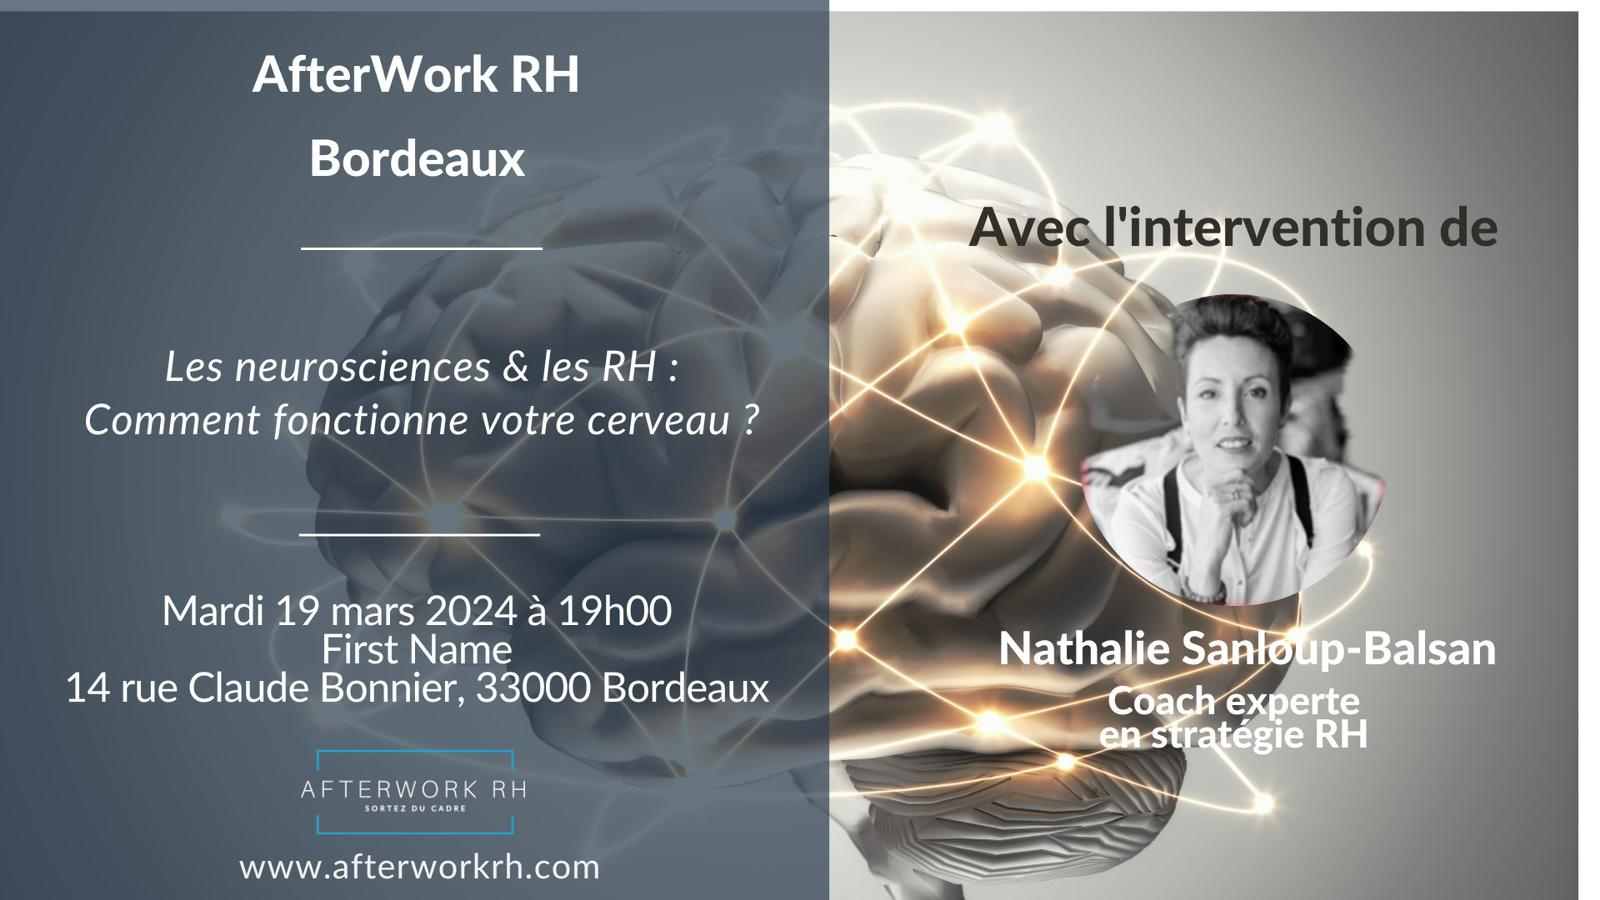 L’AfterWork RH Bordeaux vous propose de se retrouver autour d’un moment de réflexion sur le thème des neurosciences.